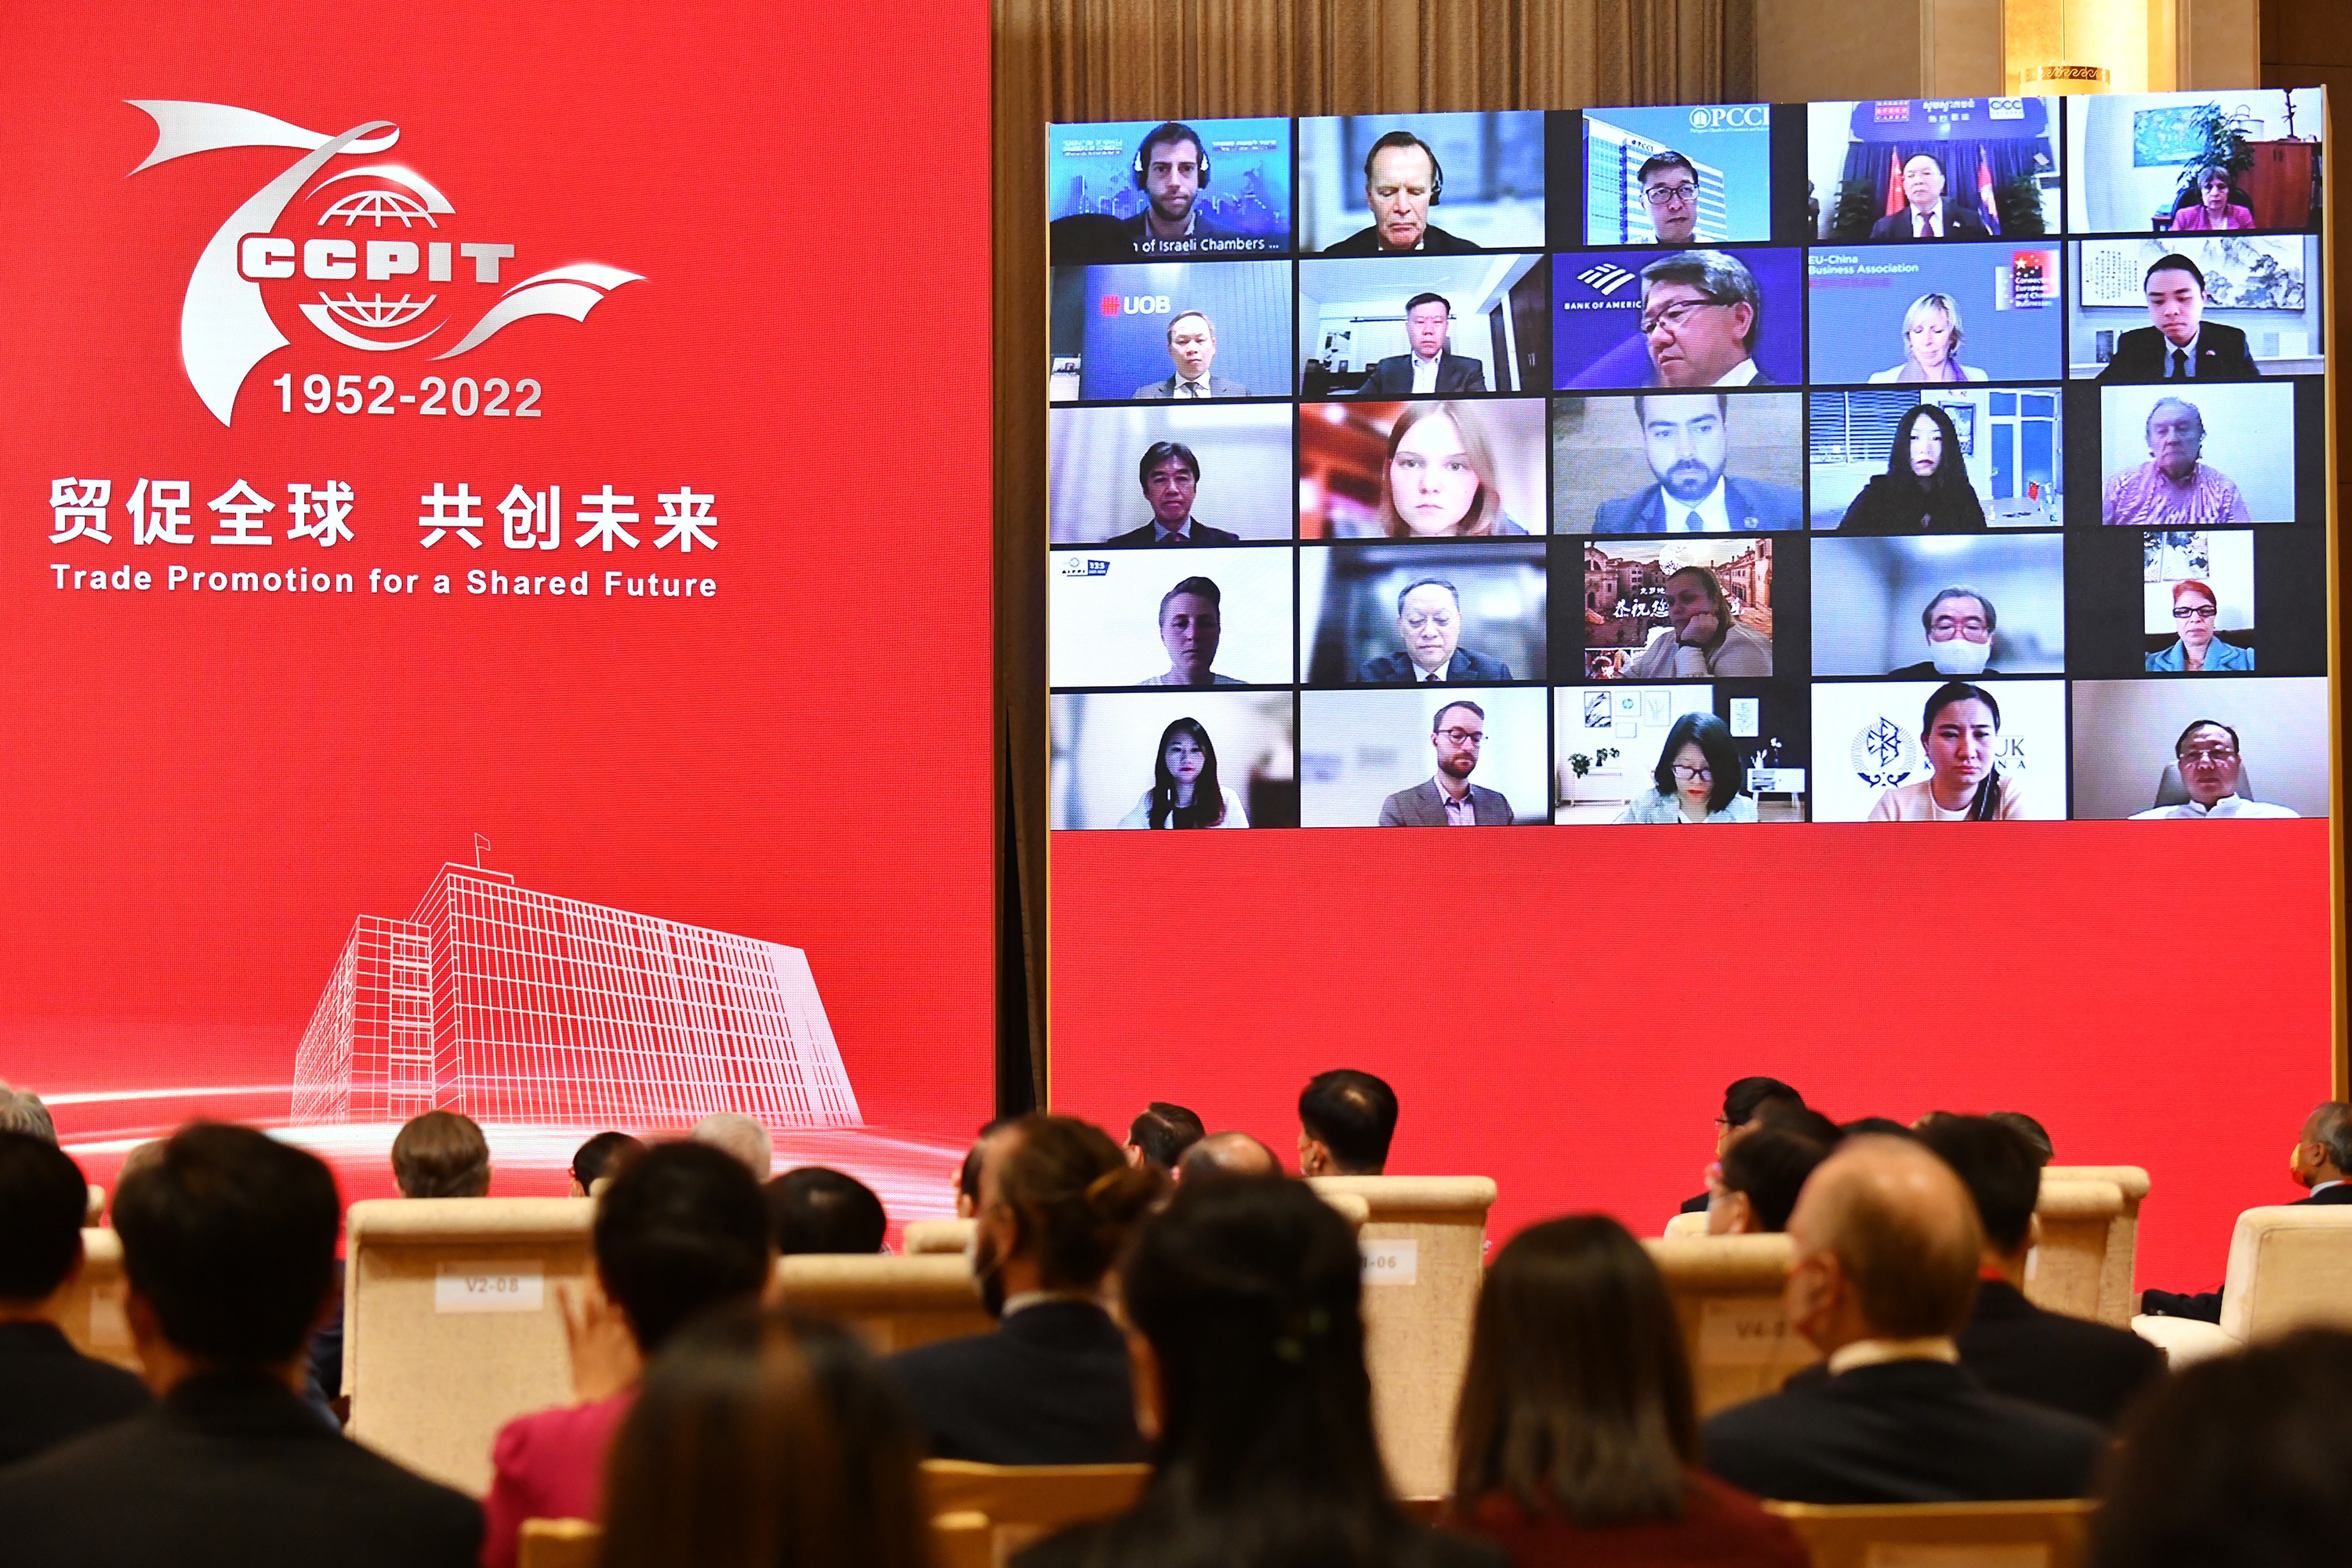 庆祝中国国际贸易促进委员会建会70周年大会暨全球贸易投资促进峰会在京举行